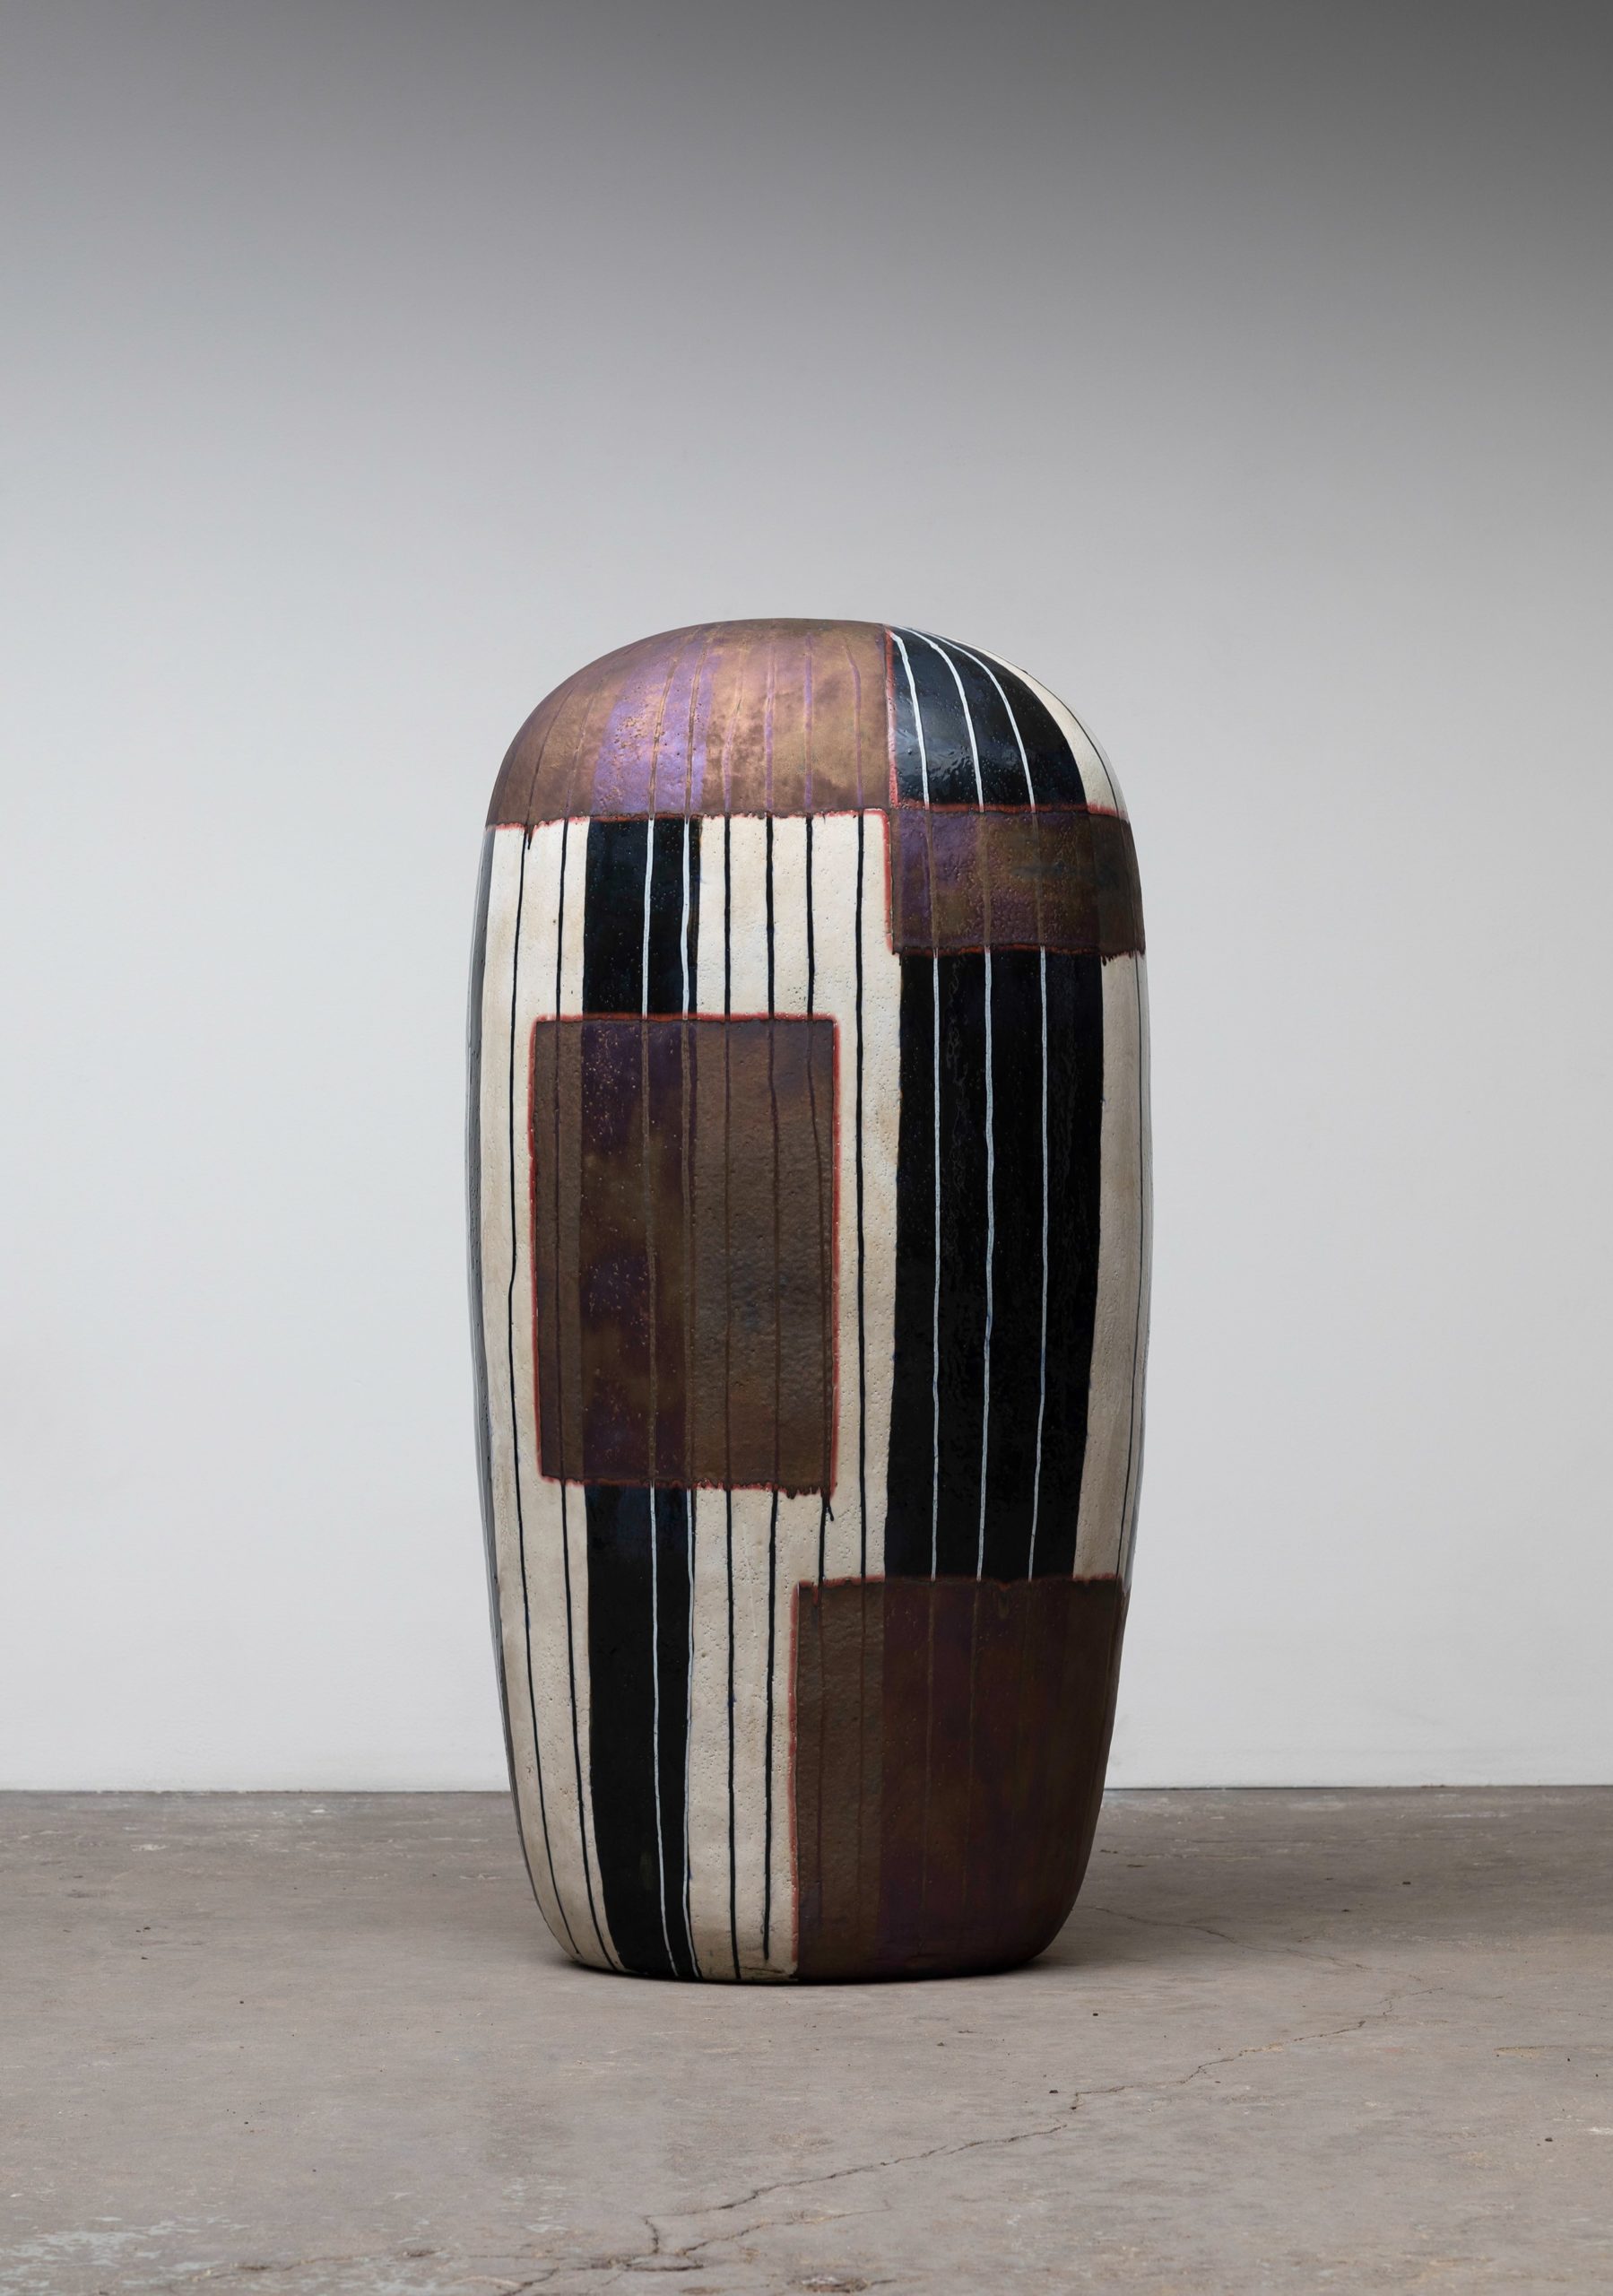 

											Jun Kaneko</b>

											<em>
												</em> 

											<h4>
												Santa Fe: September 9 – November 26, 2022											</h4>

		                																																													<i>Untitled,</i>  
																																								2010, 
																																								hand built glazed ceramics, 
																																								53.5 x 27 x 17 inches 
																								
		                				